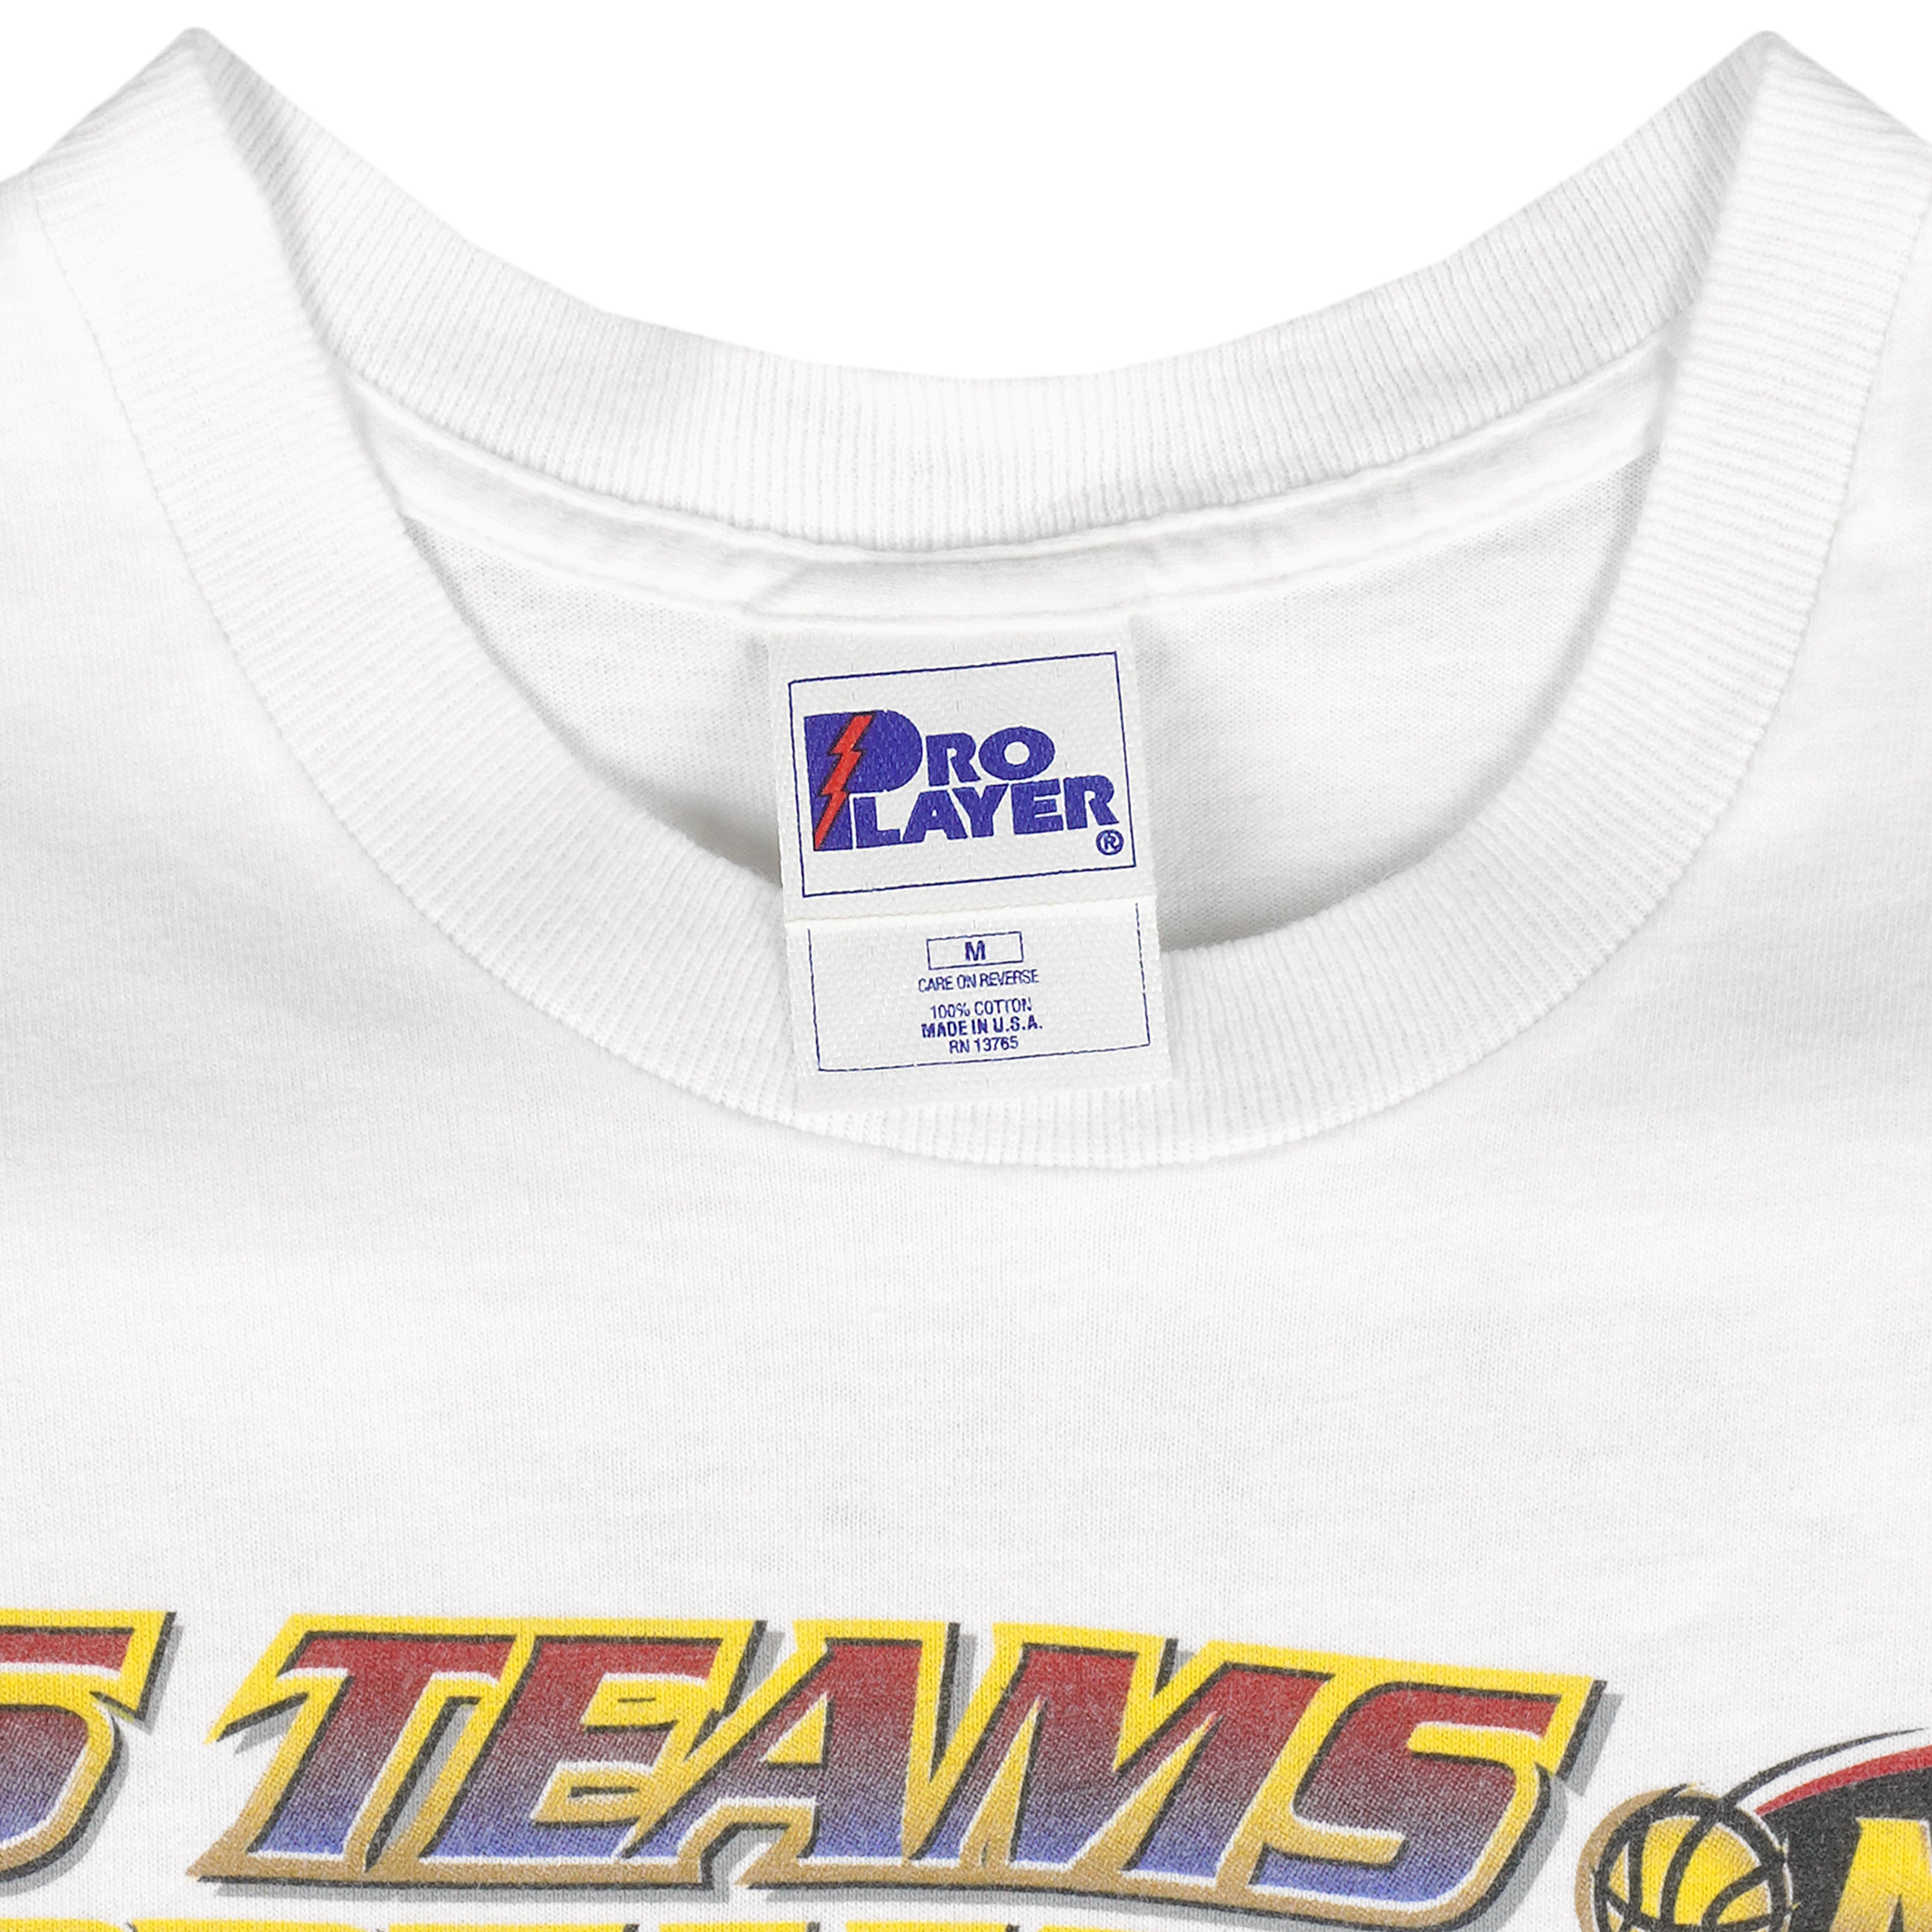 Shirts, Vintage 1998 Nba Playoffs Tshirt 16 Teams 1 Dream Basketball Shirt  Tee